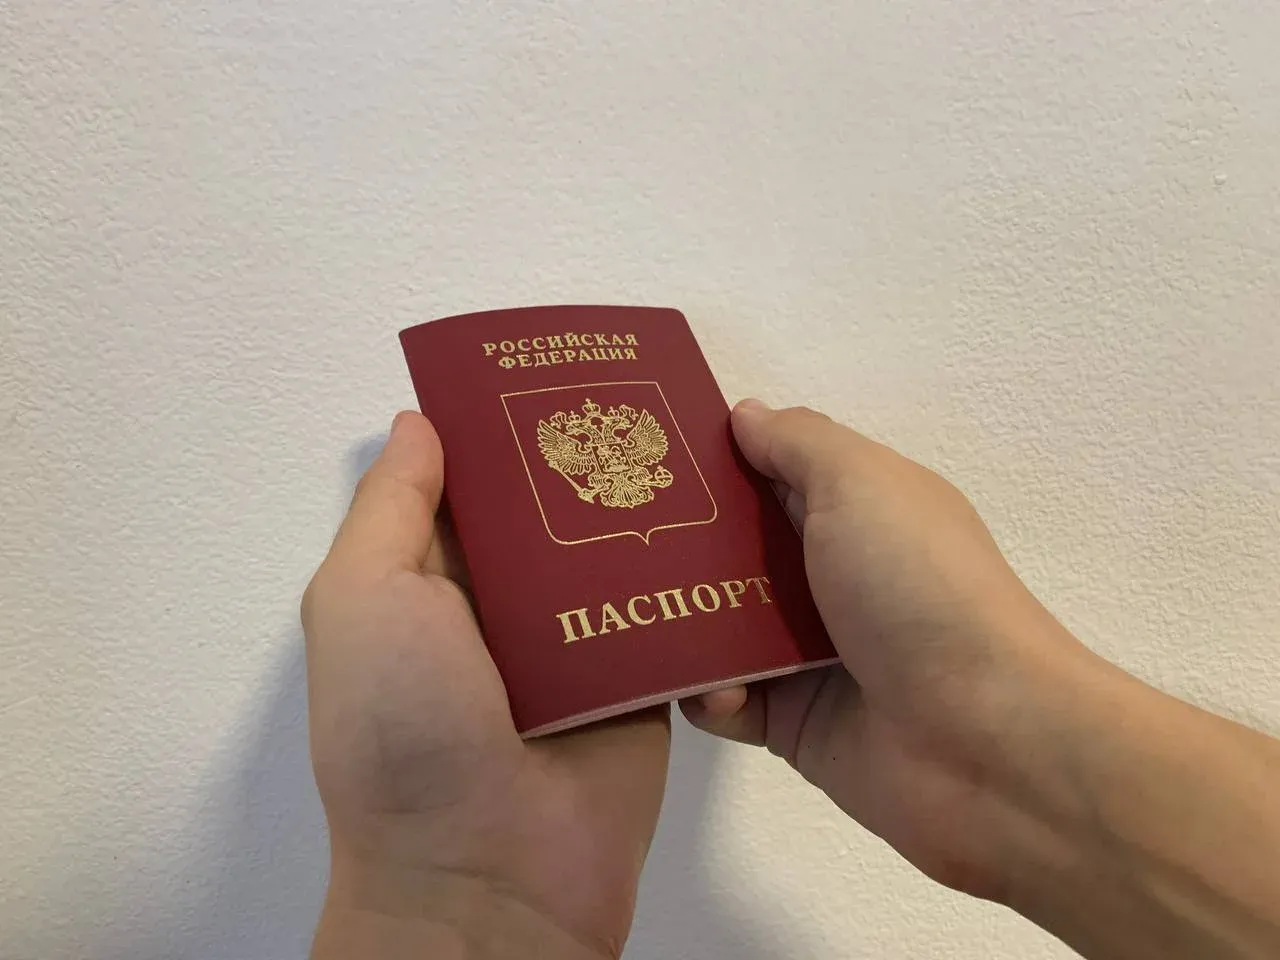 Чехия перестала признавать российские паспорта без биометрии